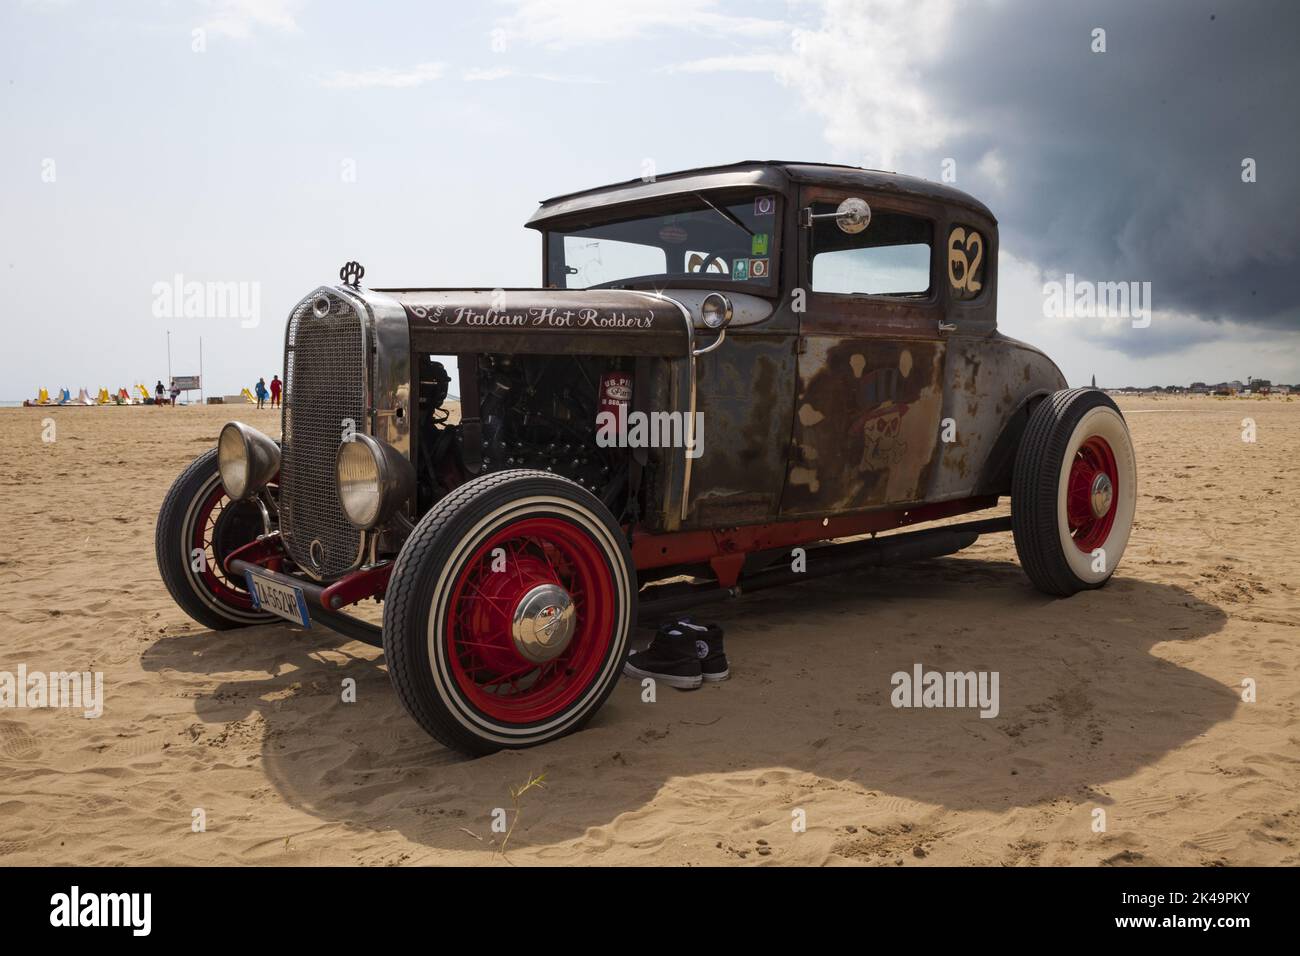 Hot Rod sulla spiaggia di Caorle, vicino a Venezia - auto rockabilly - Roll e Flat - Motor show - gara auto d'epoca Foto Stock